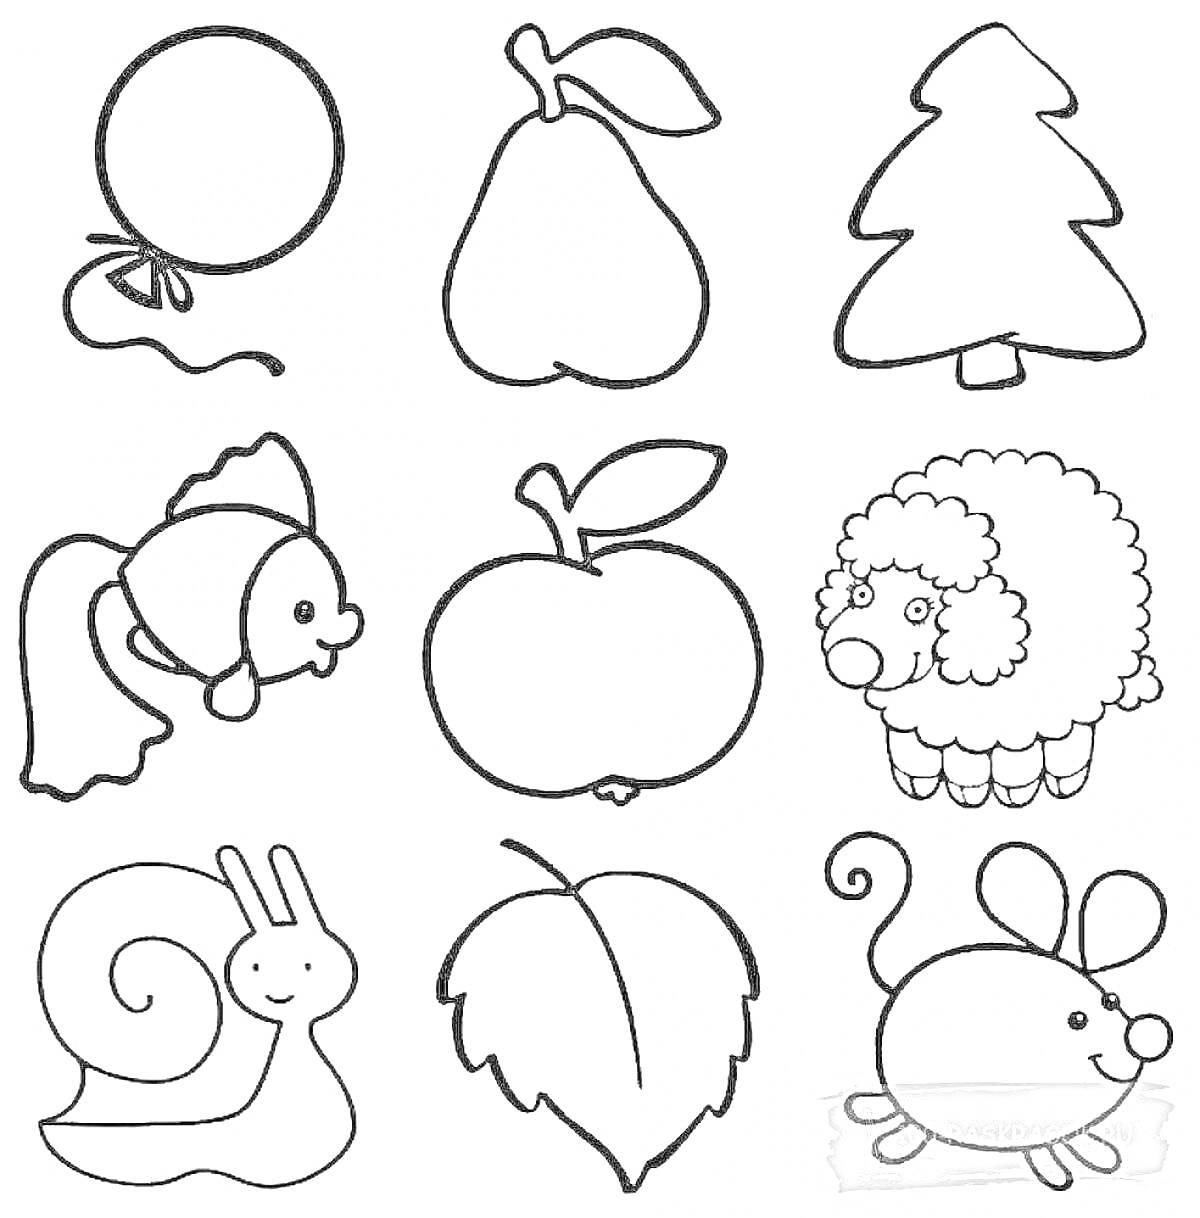 Раскраска Воздушный шарик, груша, ёлка, рыбка, яблоко, овечка, улитка, лист, мышка